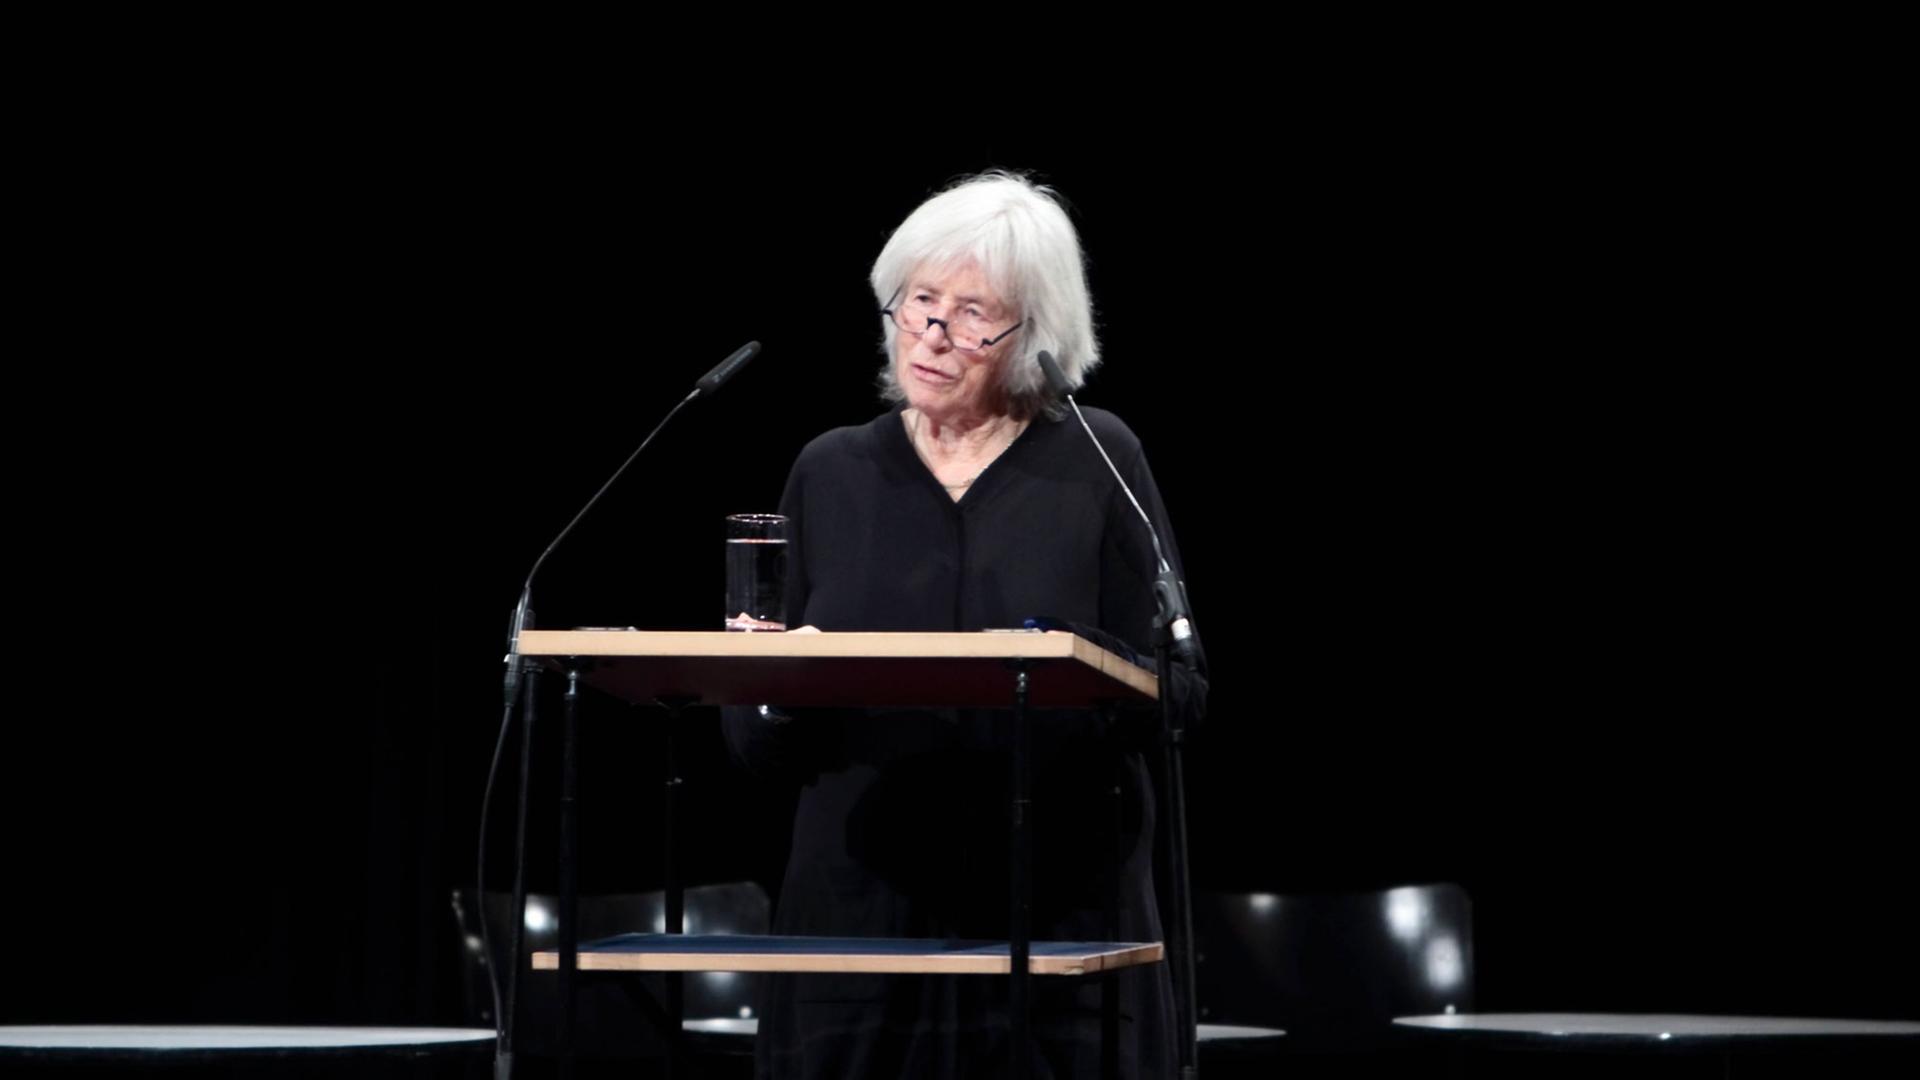 Nele Hertling hält eine Rede in der Akademie der Künste in Berlin bei der Gedenkveranstaltung an Christa Wolf am 13.12.2011